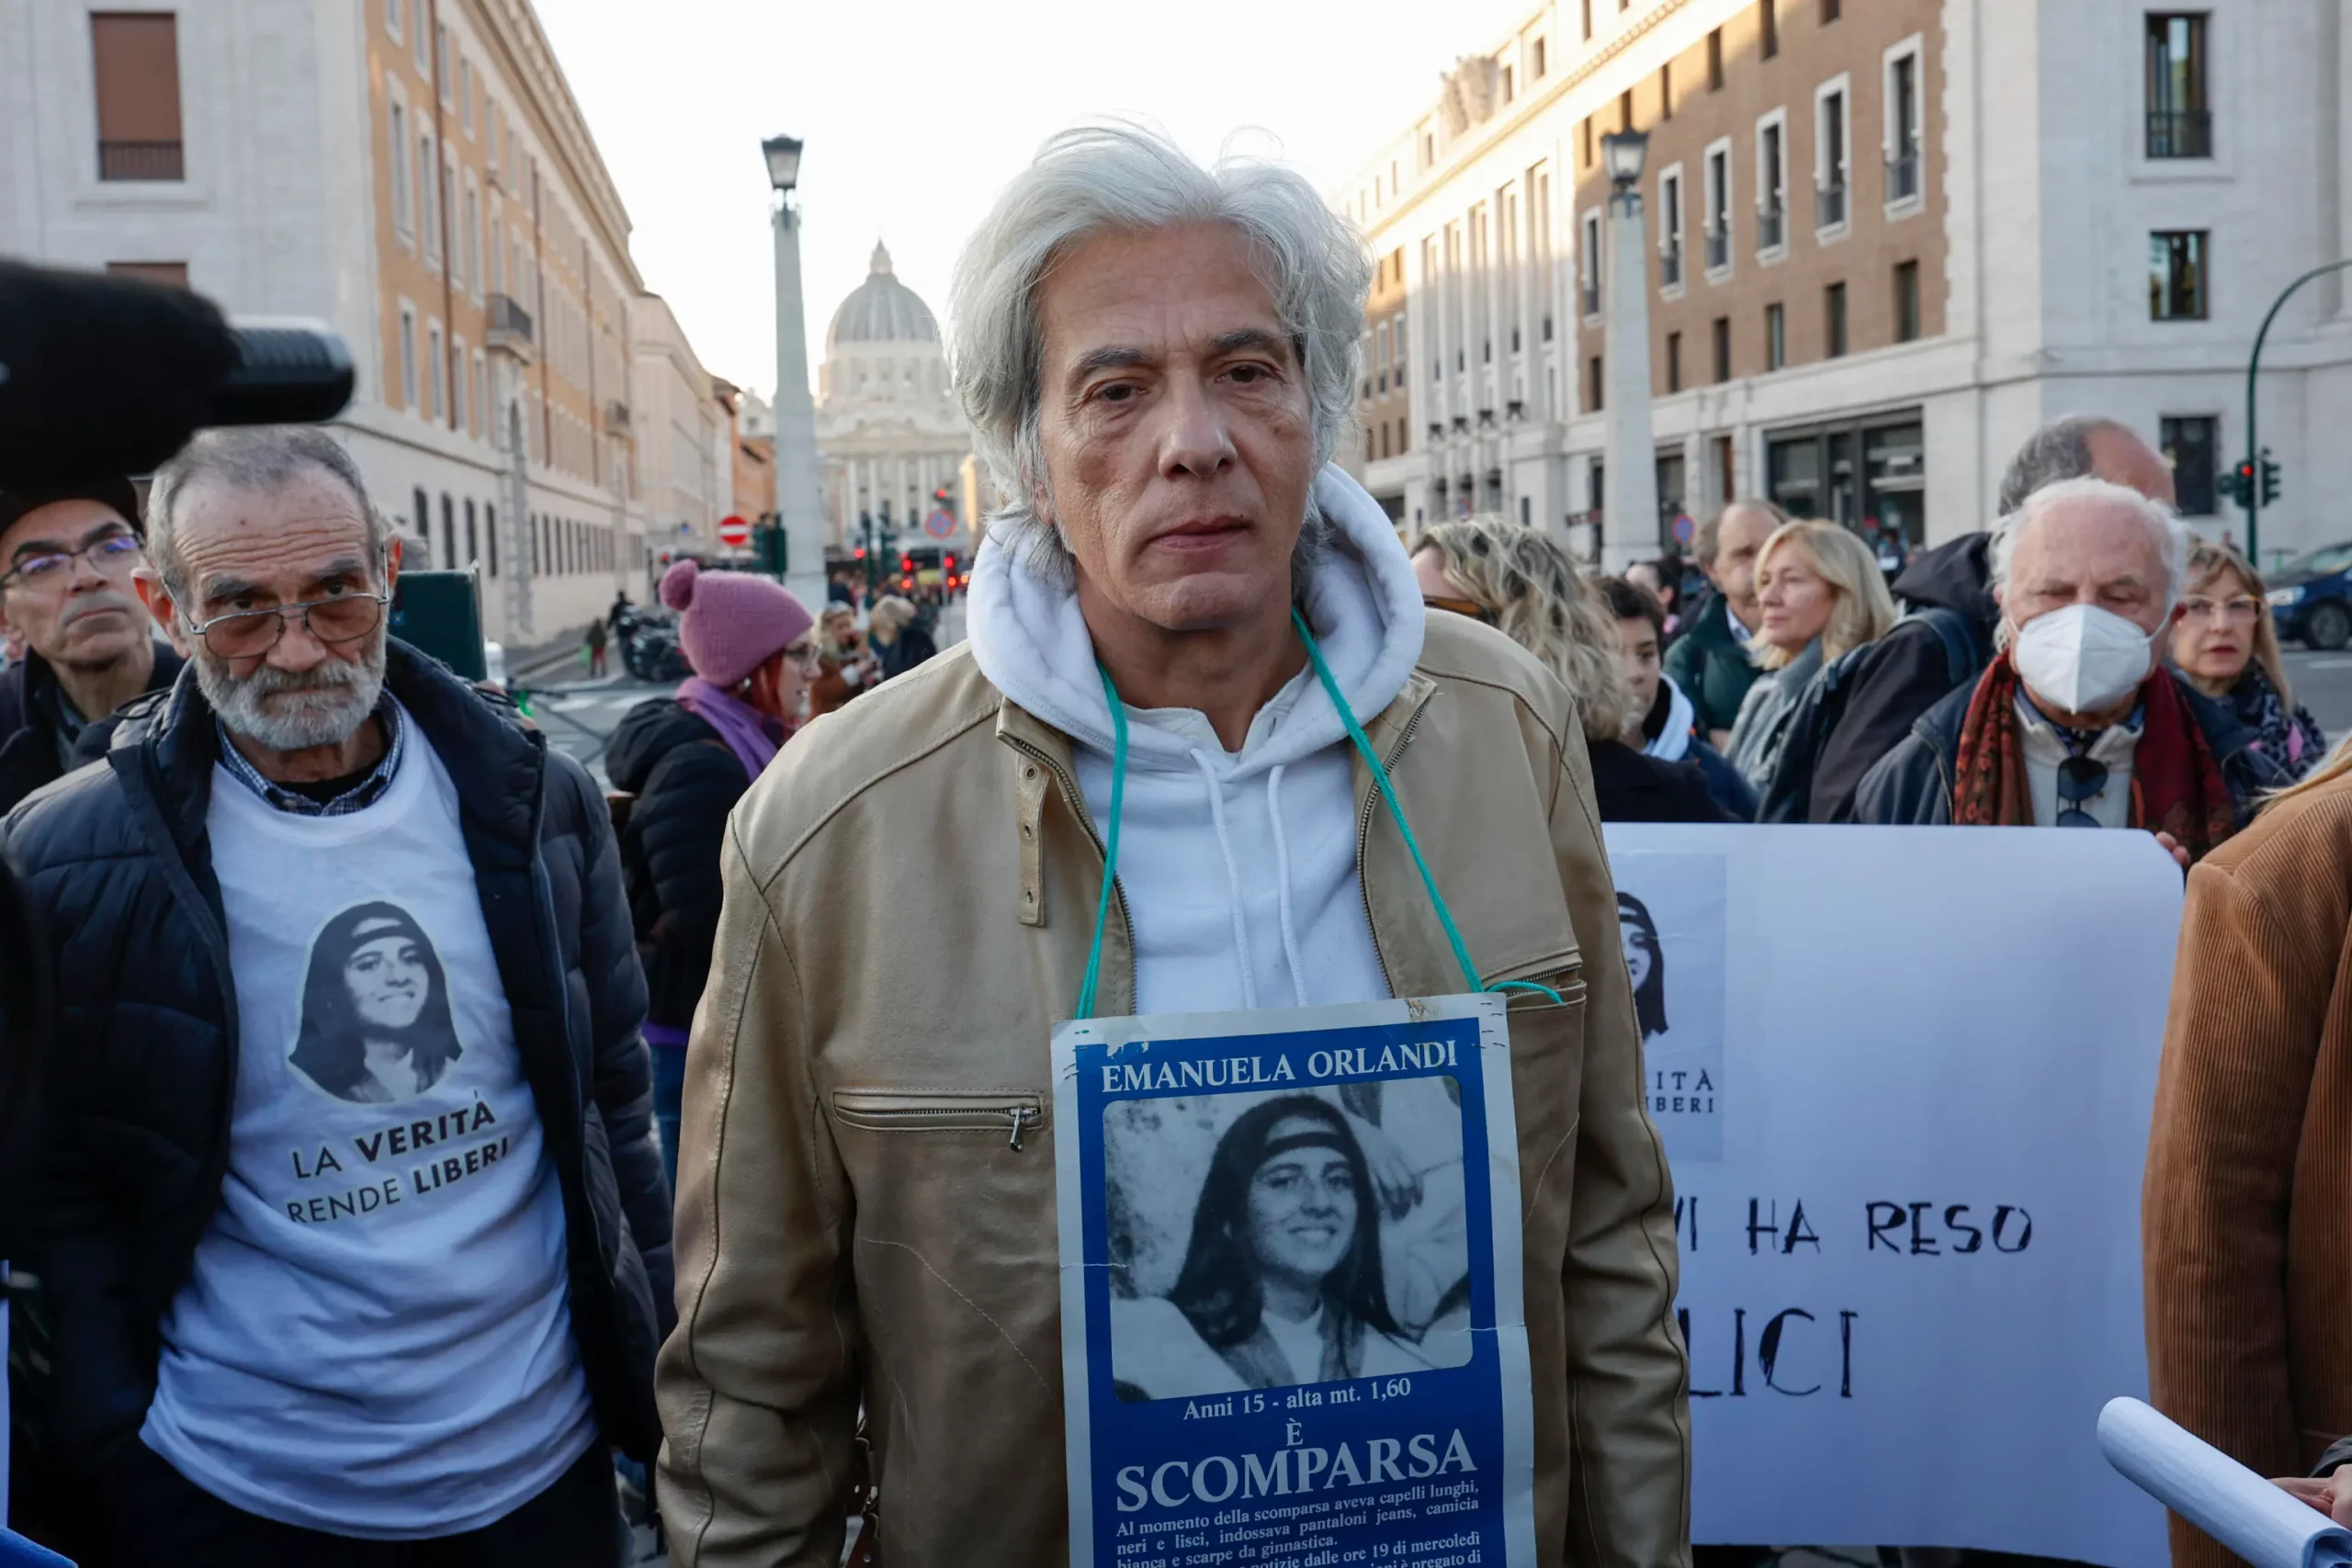 Pietro Orlandi contro l'ex carabiniere che dice di sapere dove è sepolta Emanuela: "Follie"